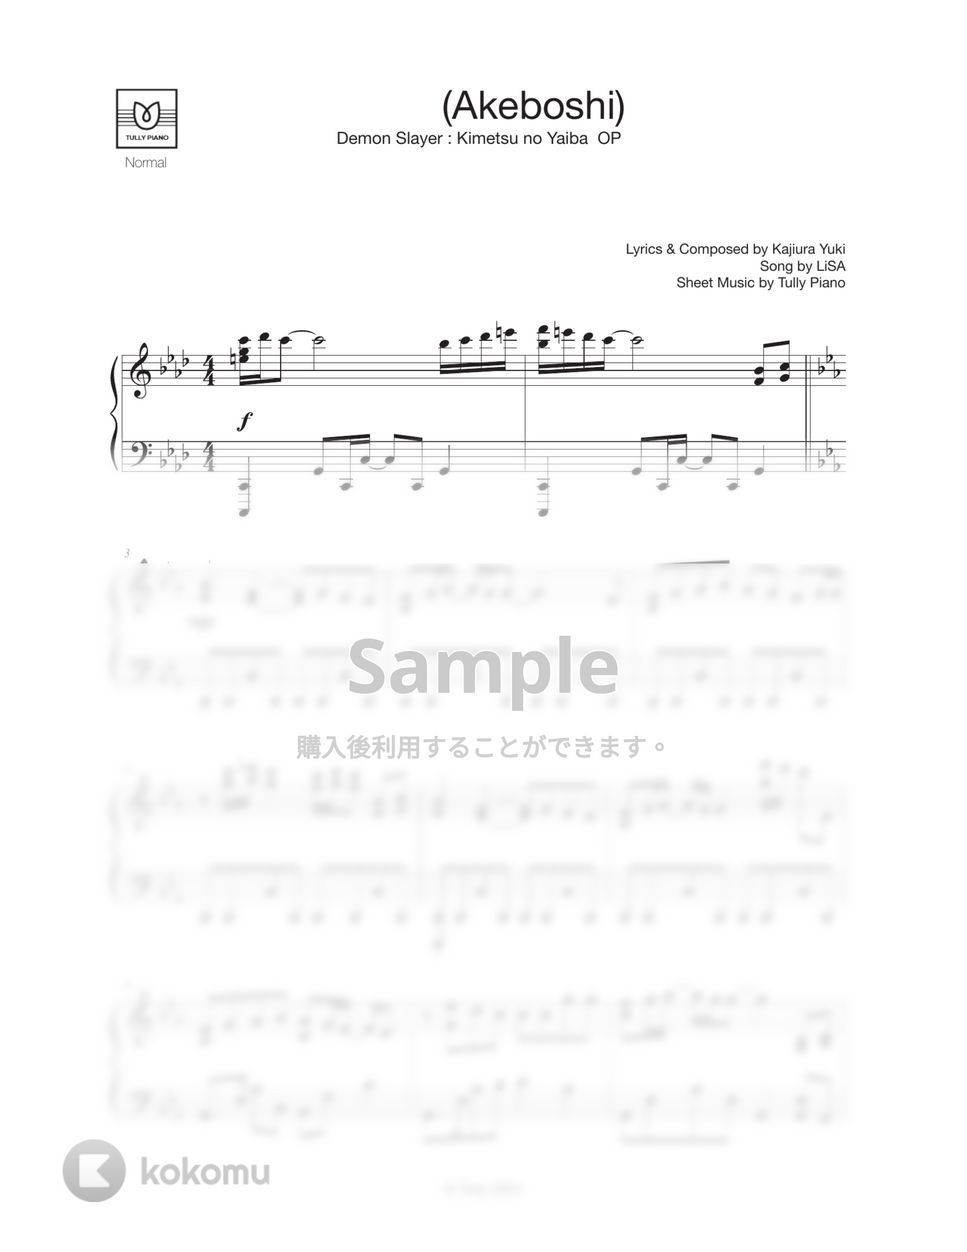 LiSA - 明け星 (中級 / 『鬼滅の刃-無限列車編-OP』) by Tully Piano